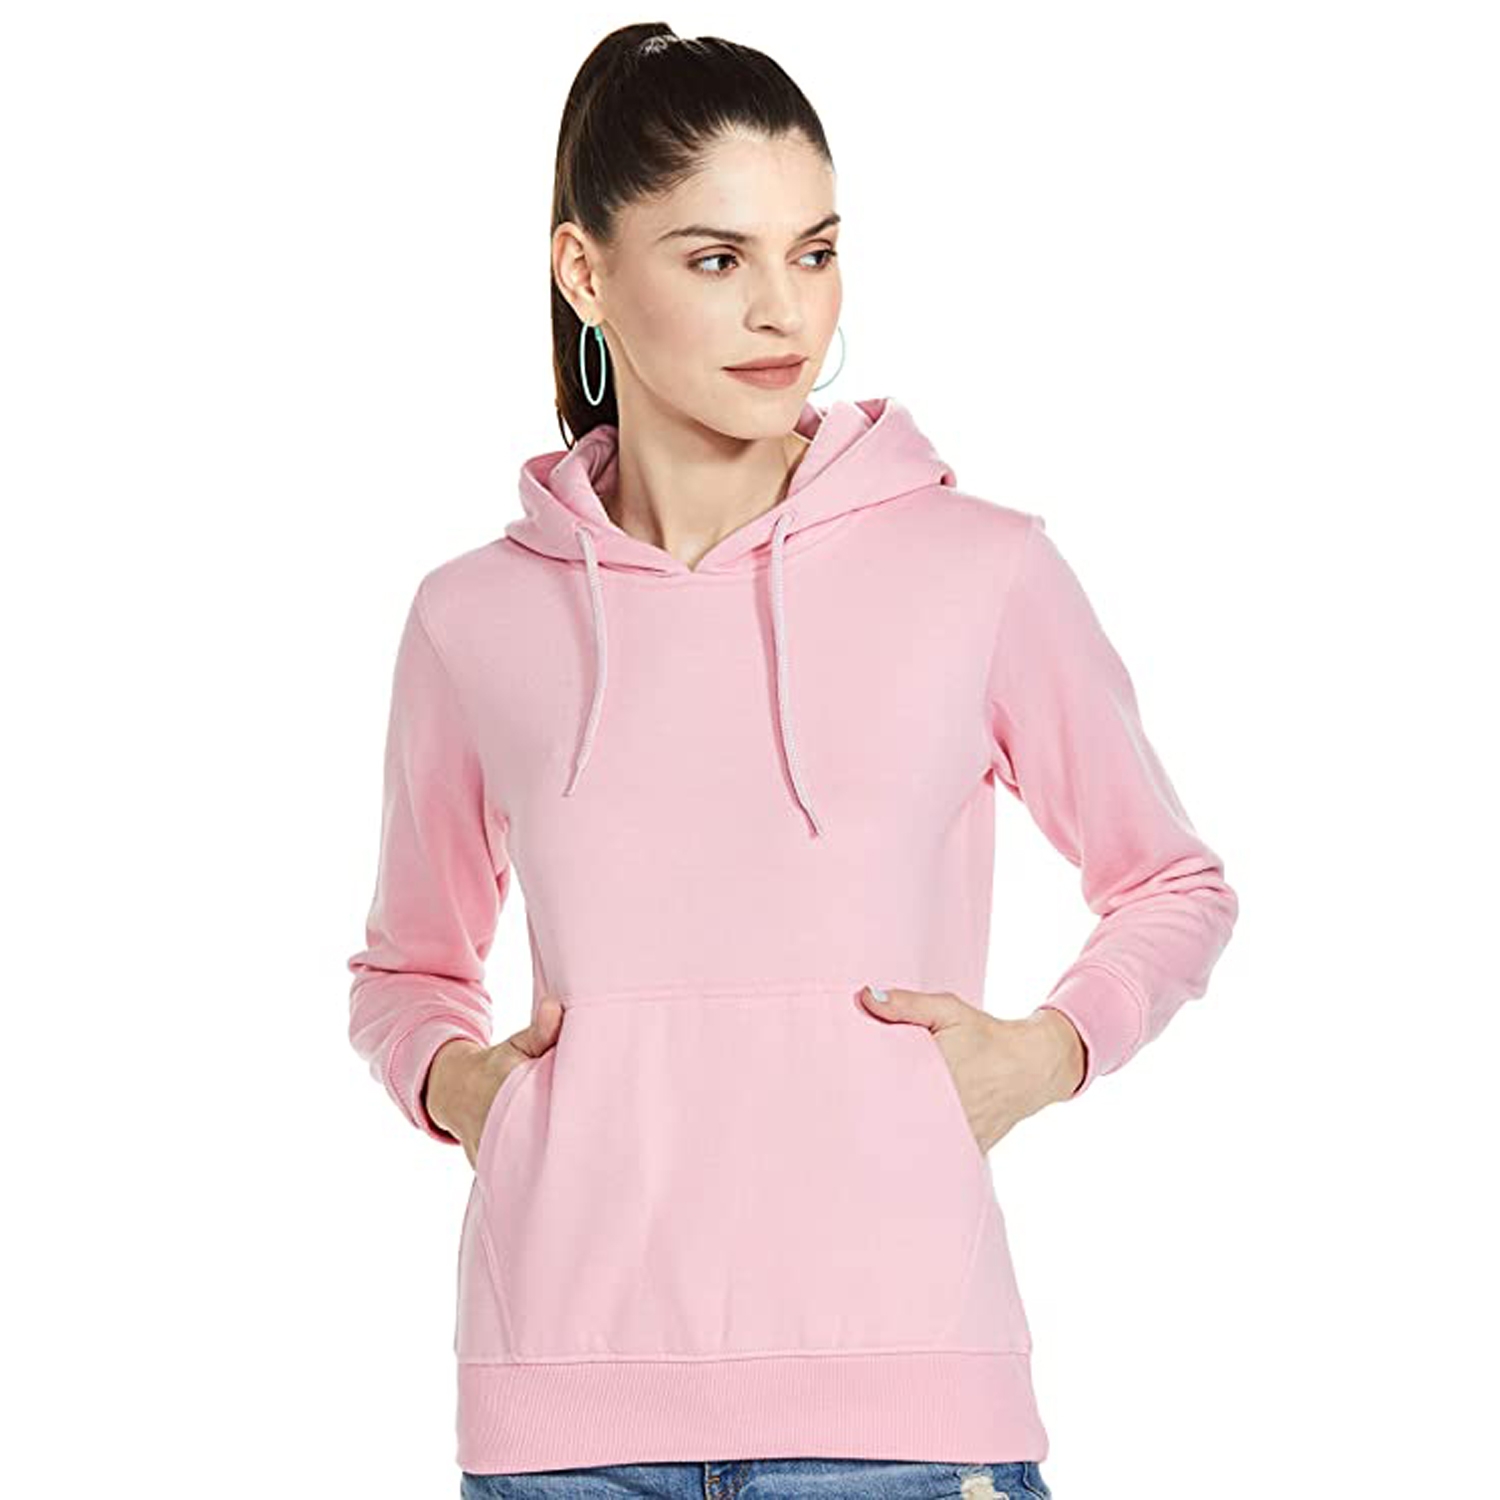 HEATHEX | HEATHEX Women’s Hooded Sweatshirt Full Sleeve Cotton Fleece